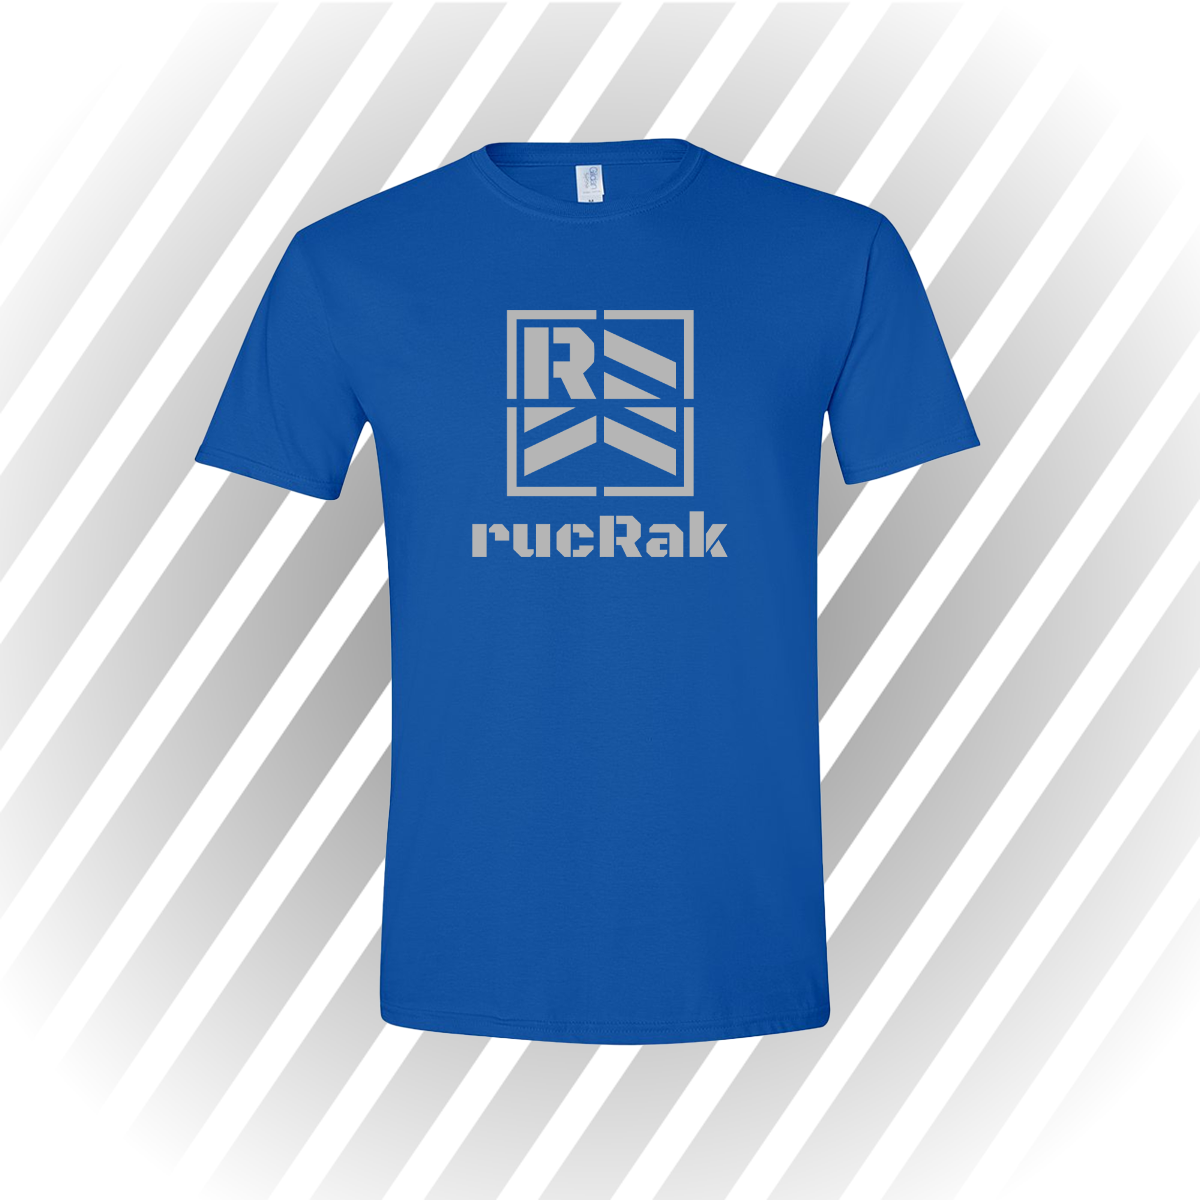 rucRak Short-Sleeve Unisex T-Shirt